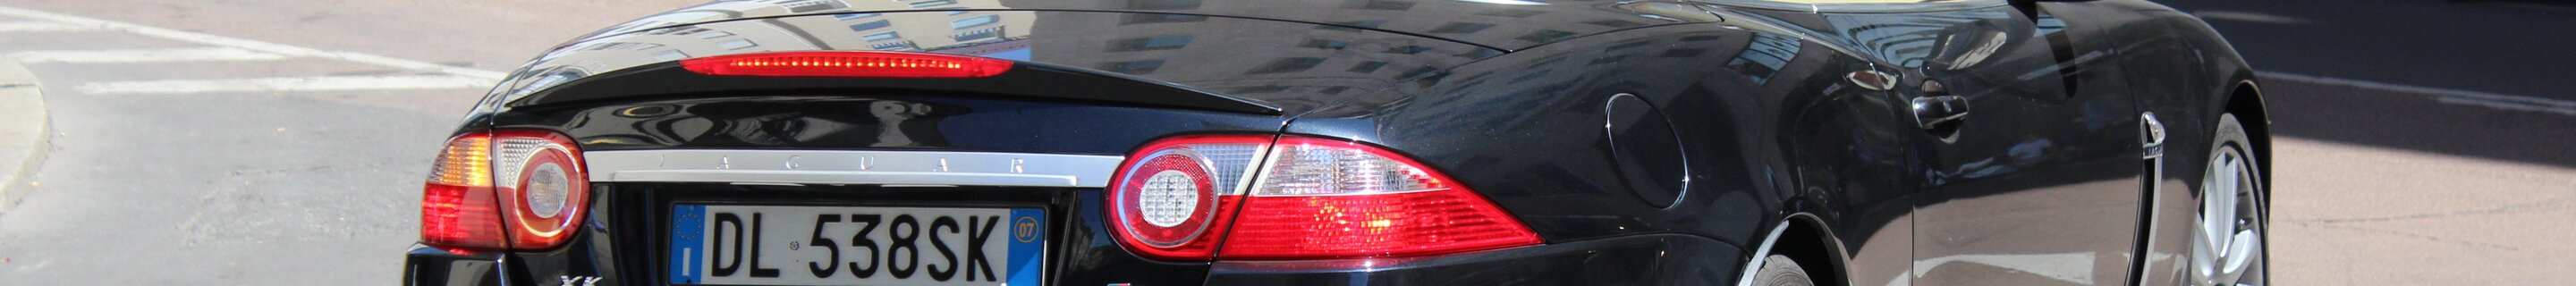 Jaguar XKR Portfolio Convertible